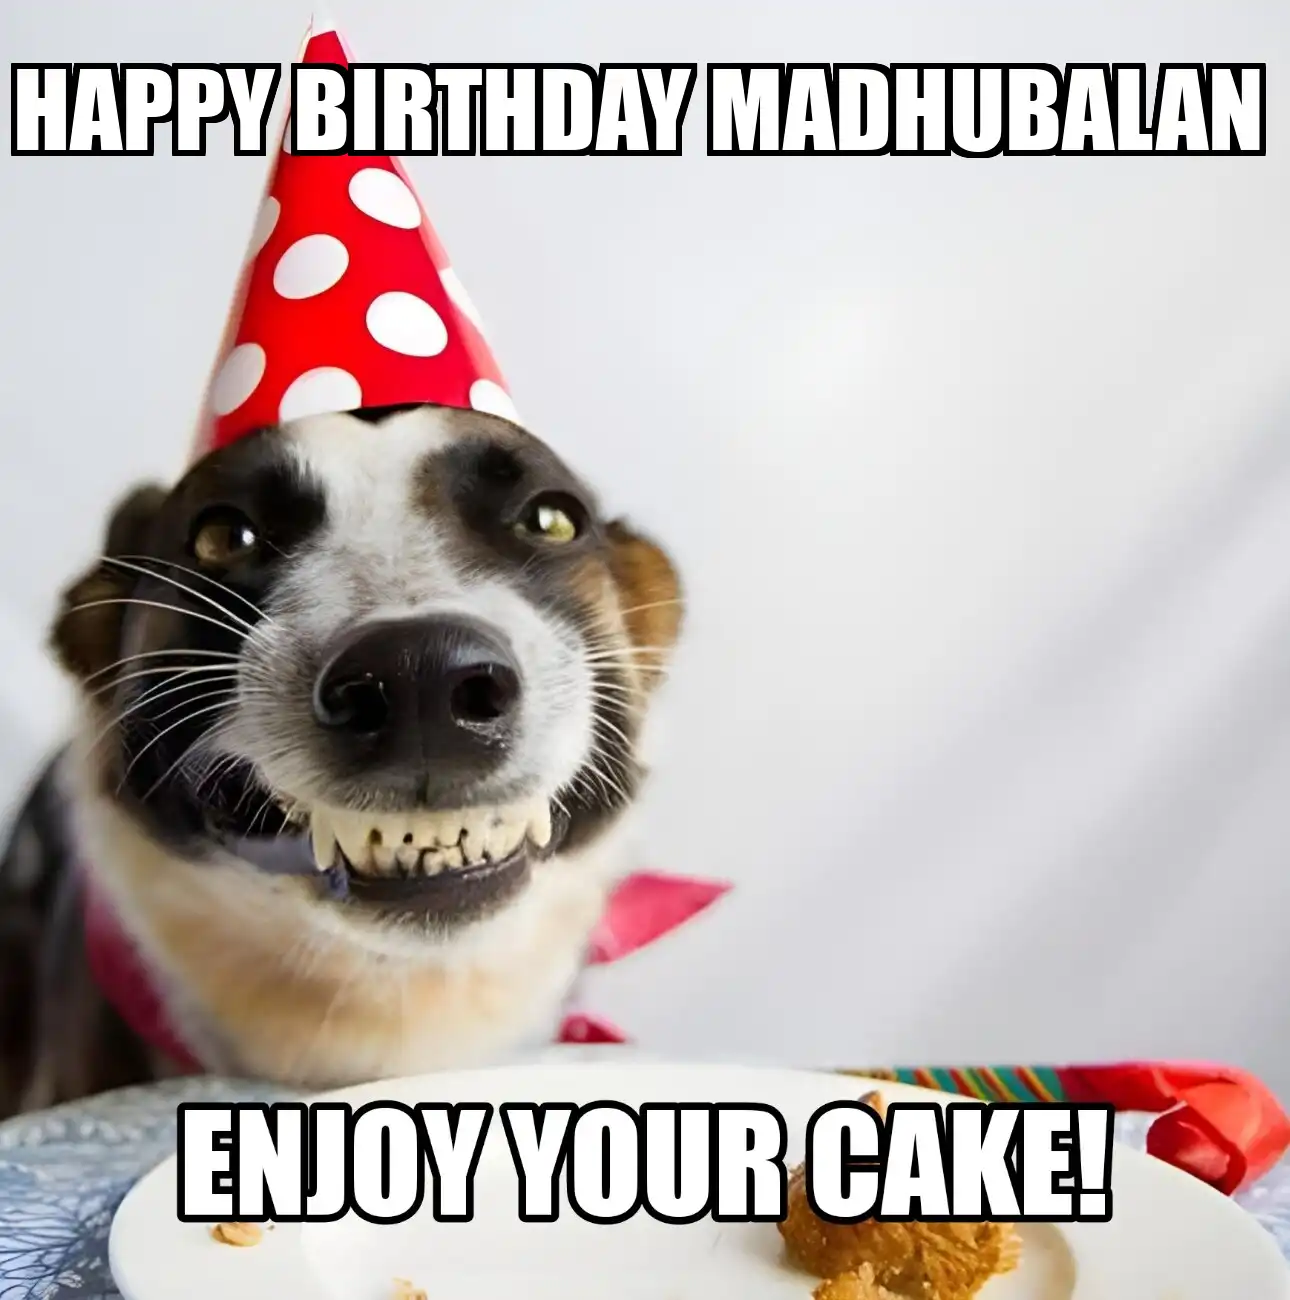 Happy Birthday Madhubalan Enjoy Your Cake Dog Meme